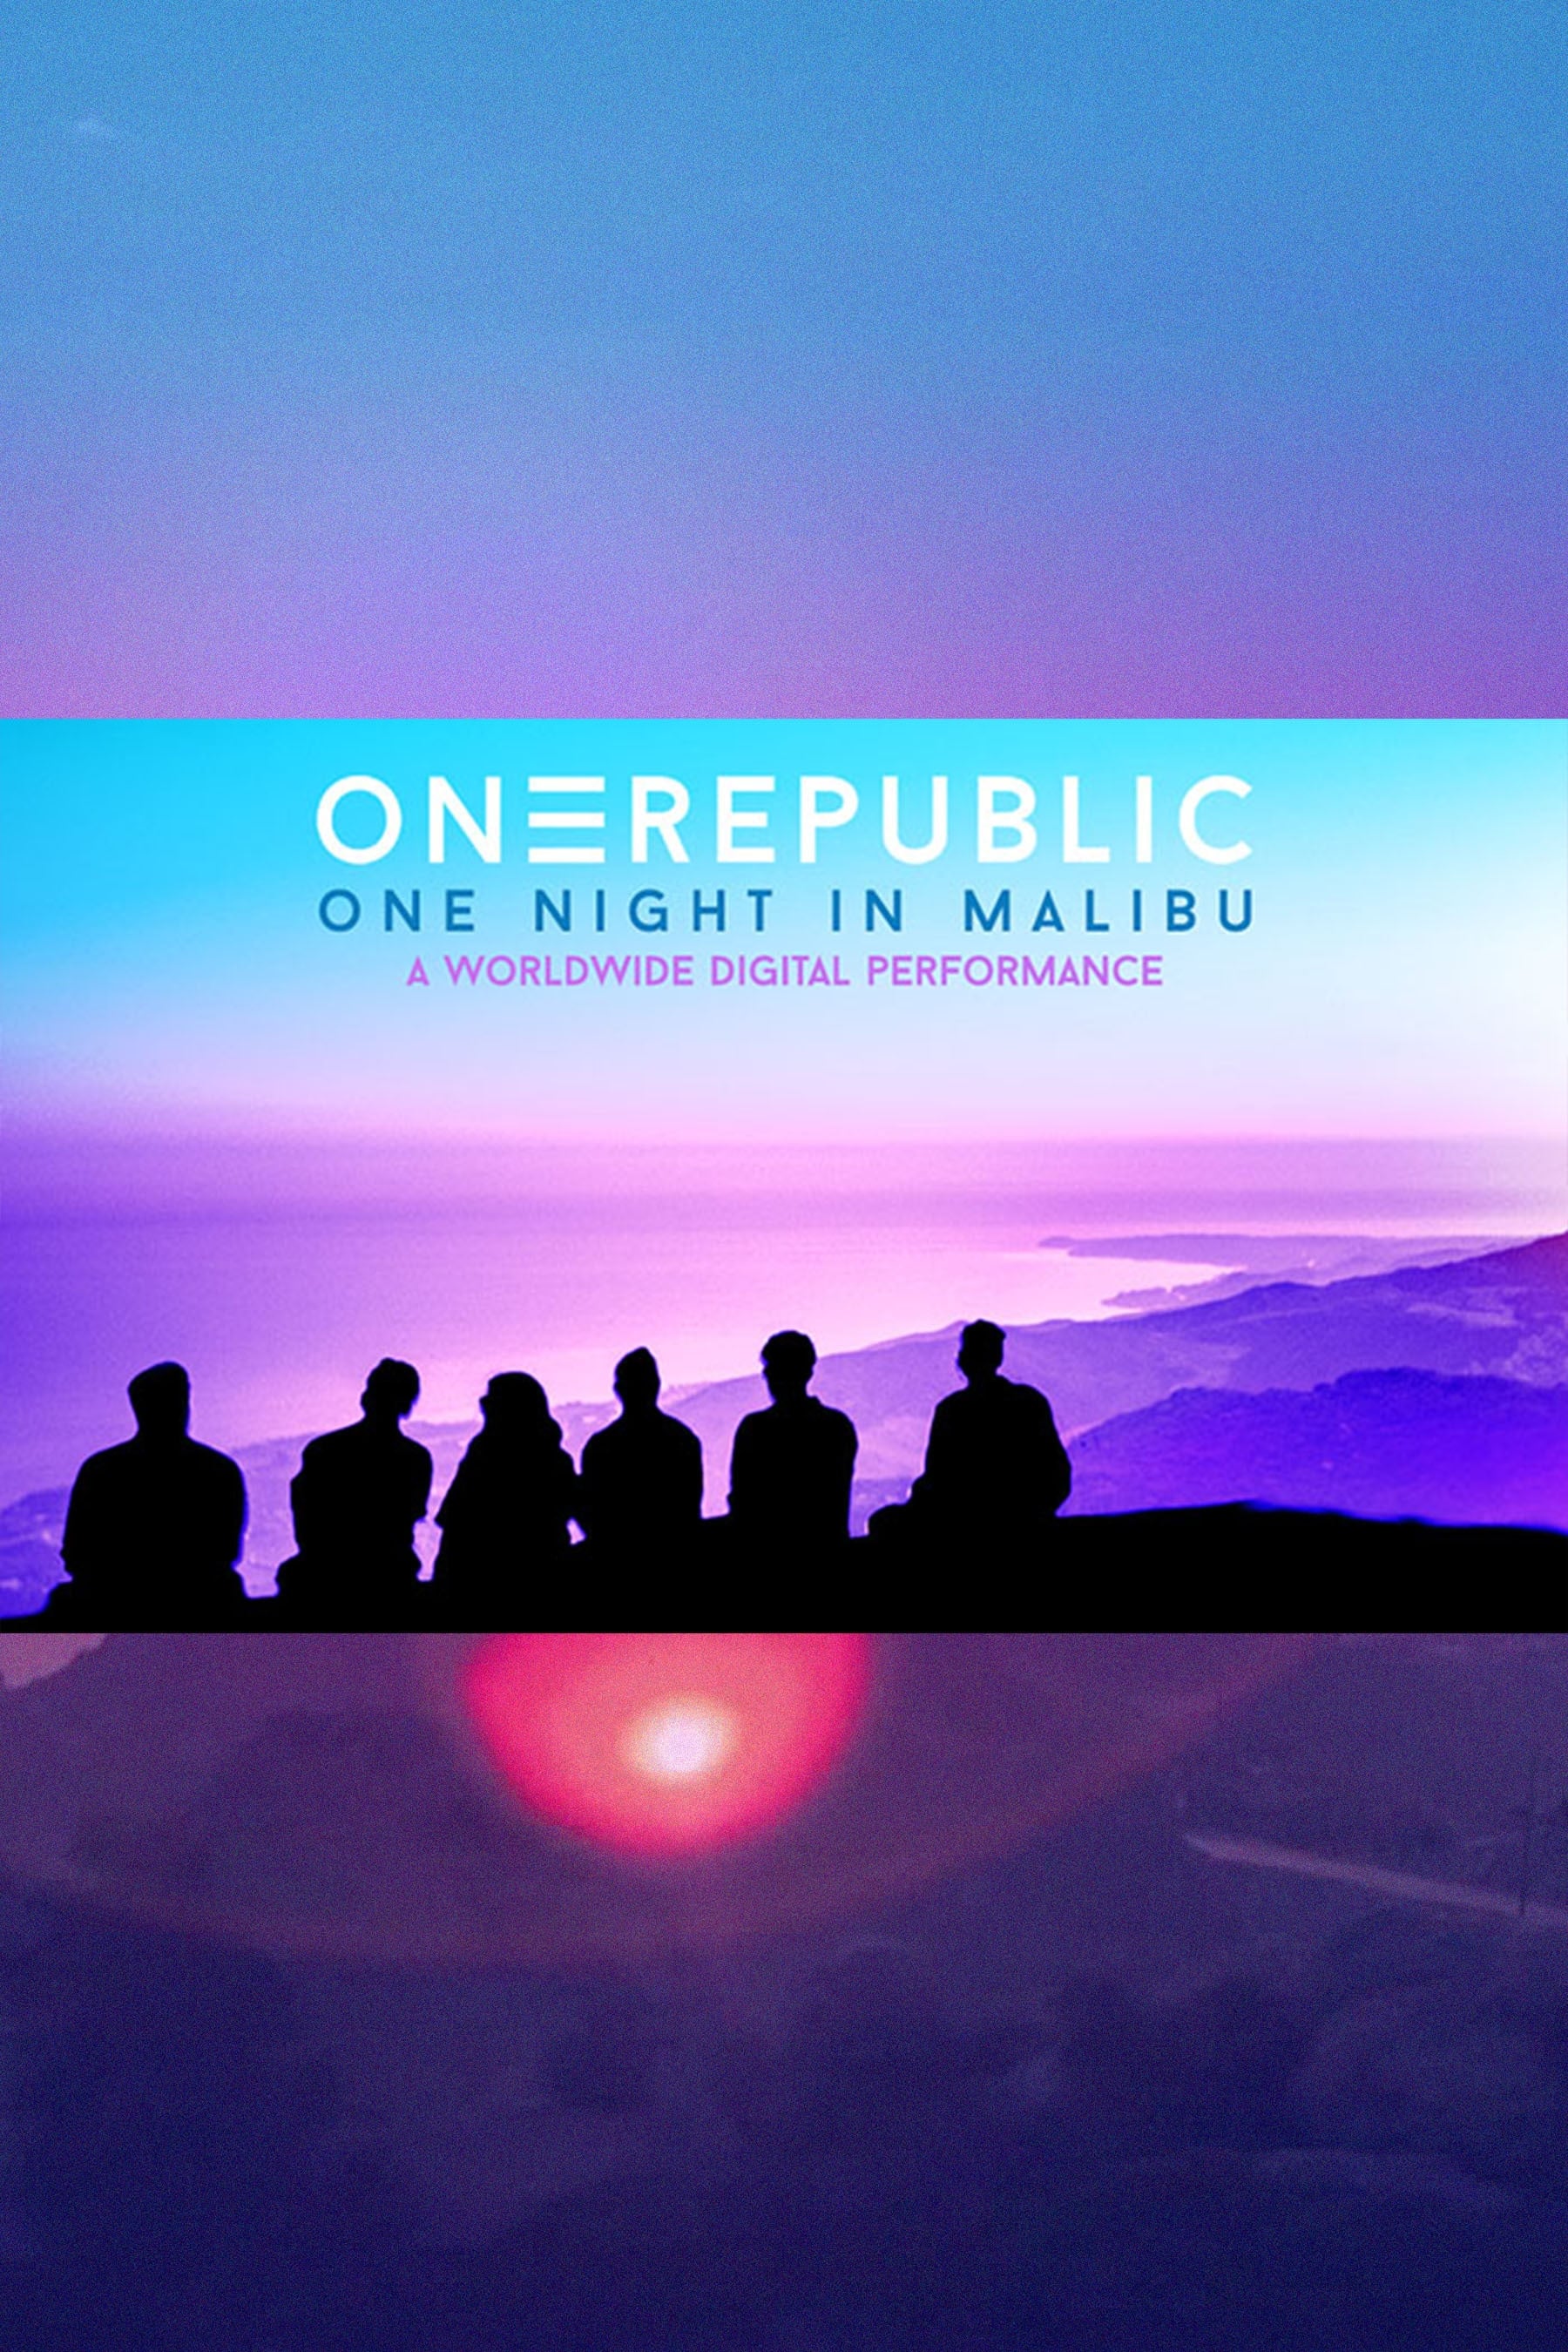 OneRepublic - "One Night in Malibu"